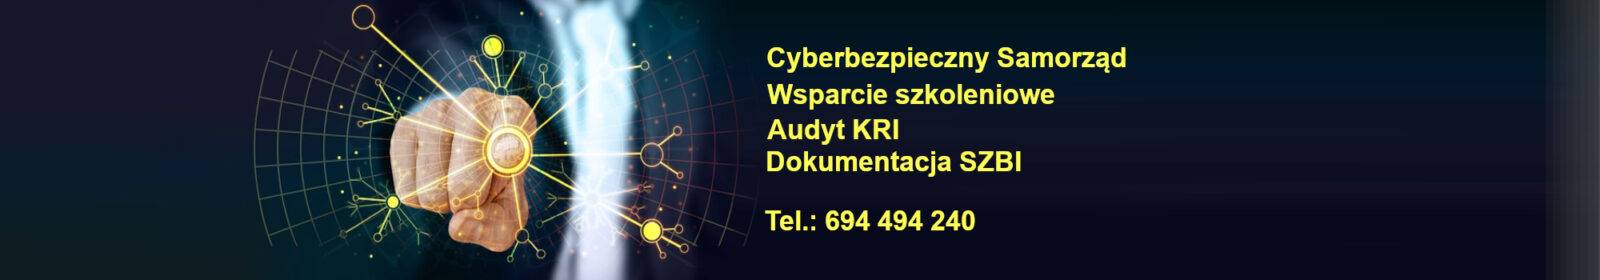 Audyt KRI Dokumentacja SZBI Szkolenia z cyberbezpieczeństwa